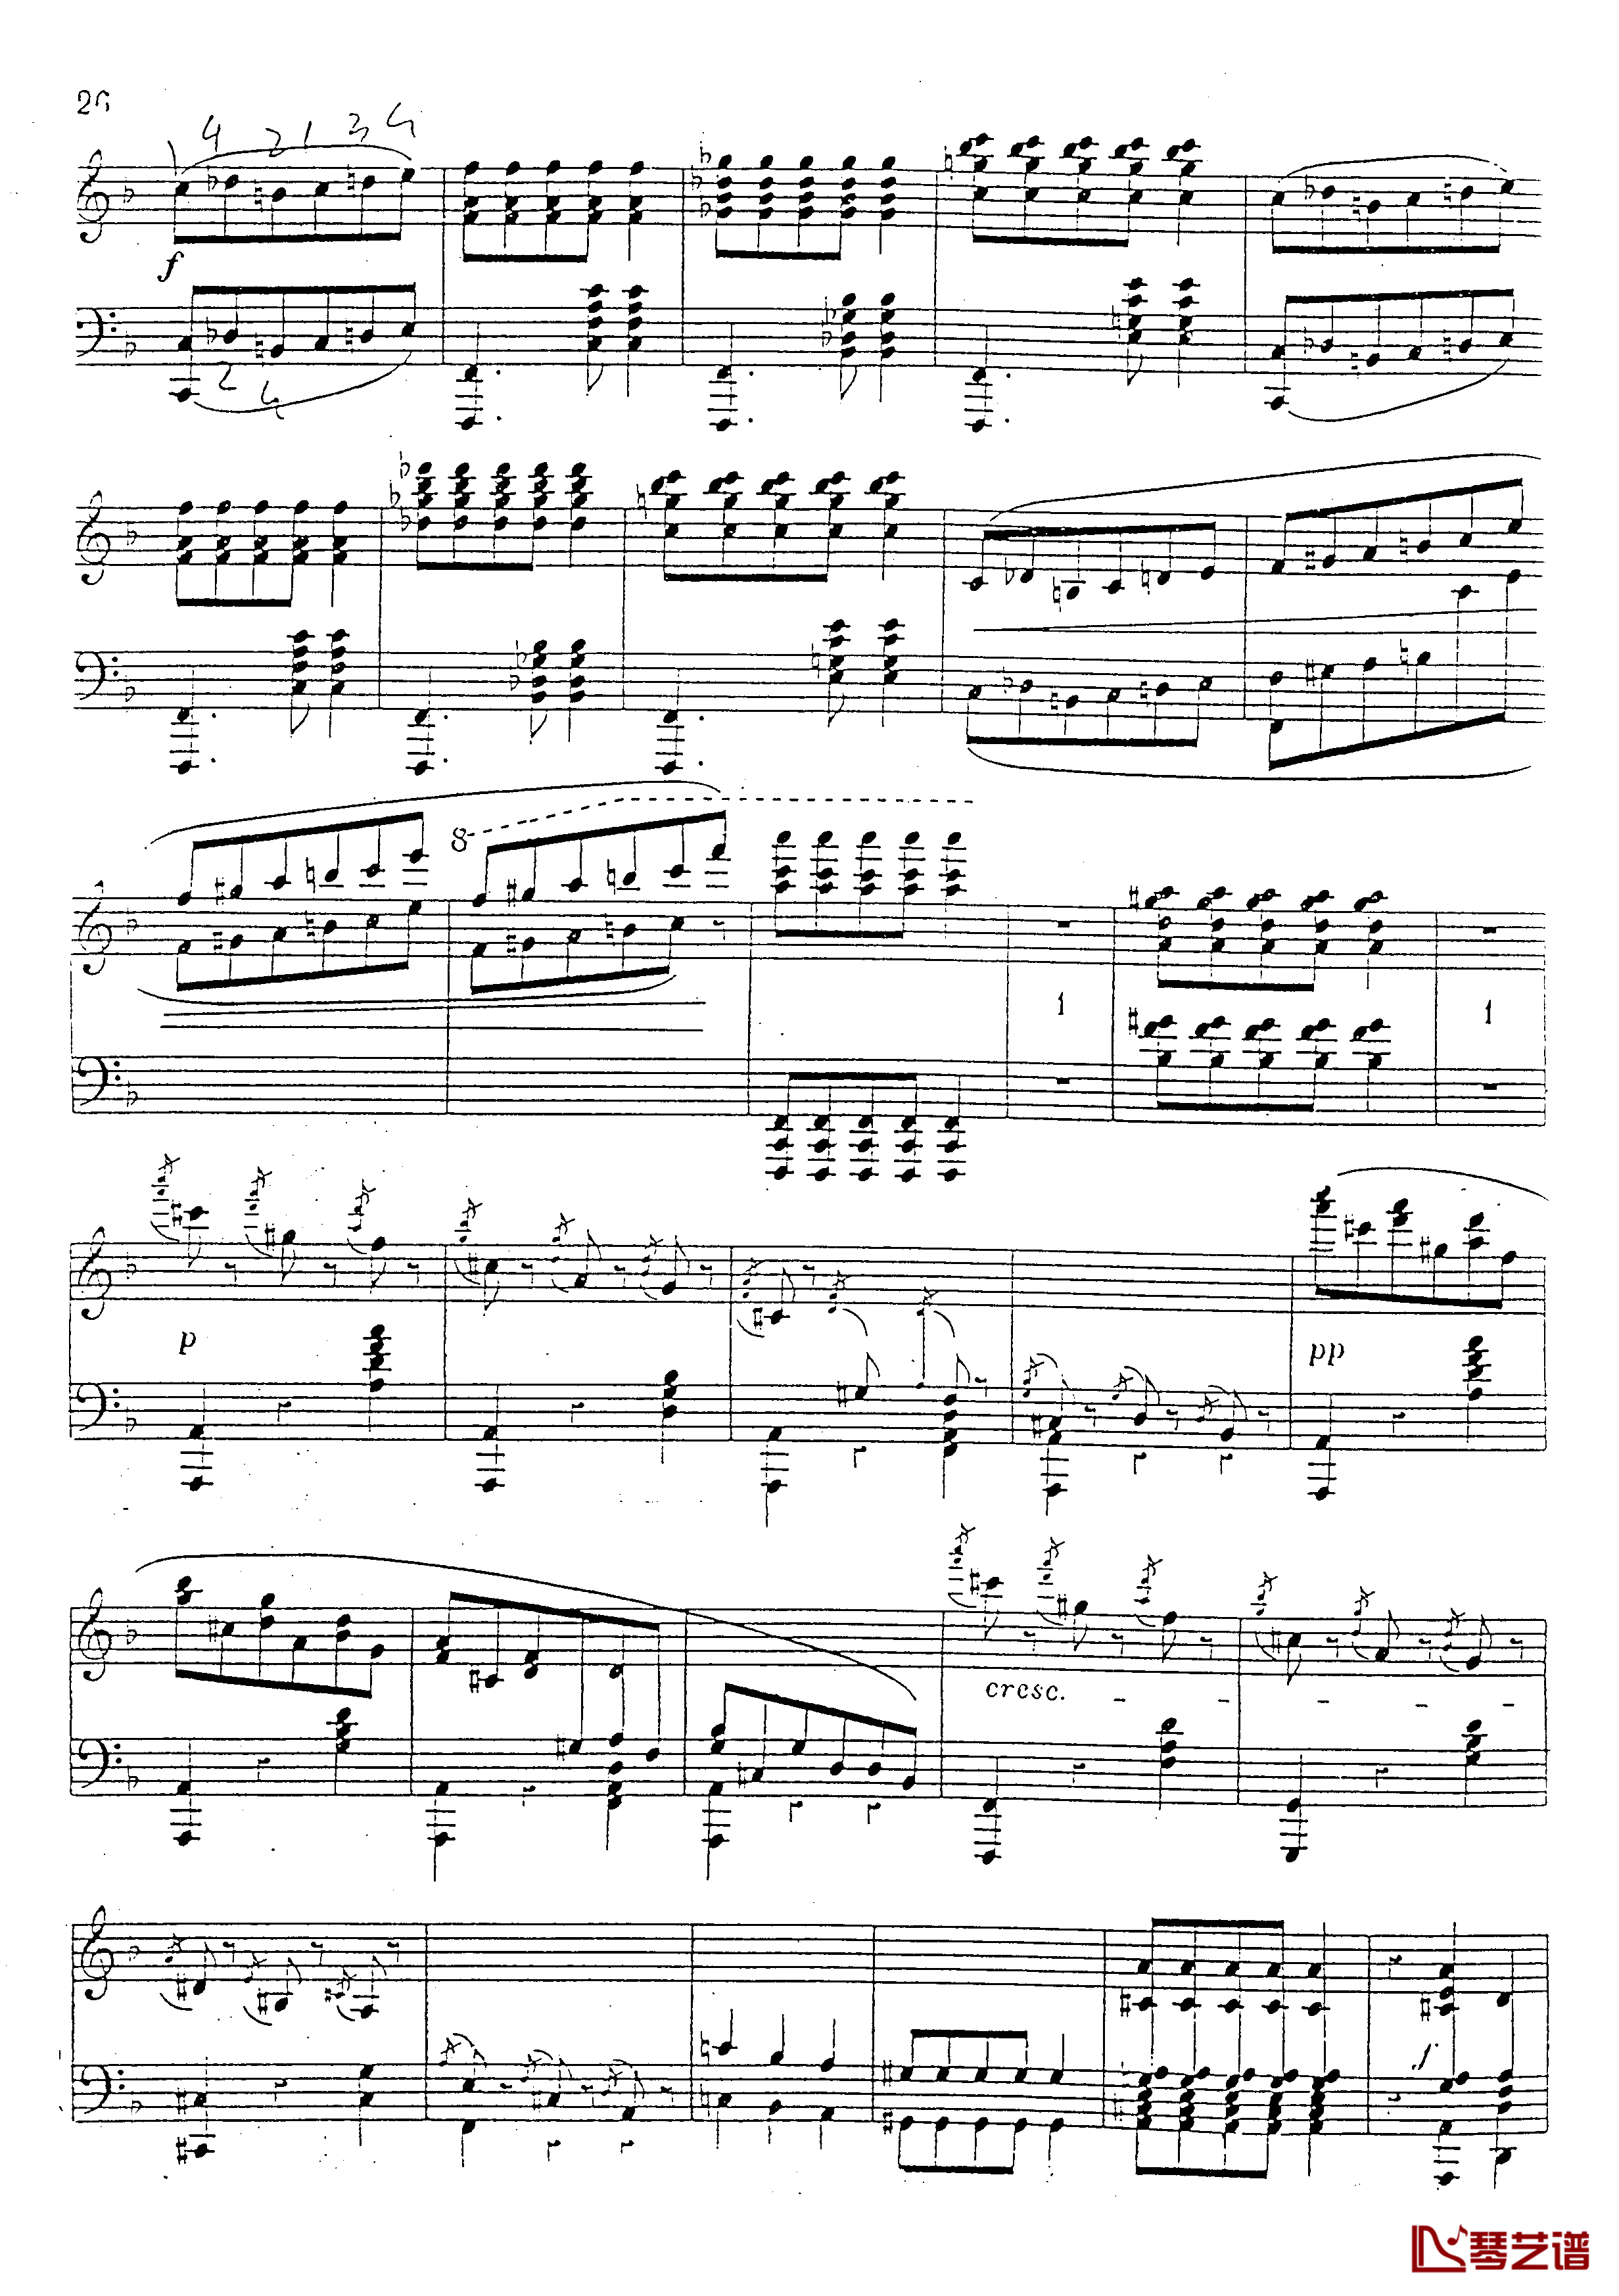 a小调第四钢琴奏鸣曲钢琴谱-安东 鲁宾斯坦- Op.10027